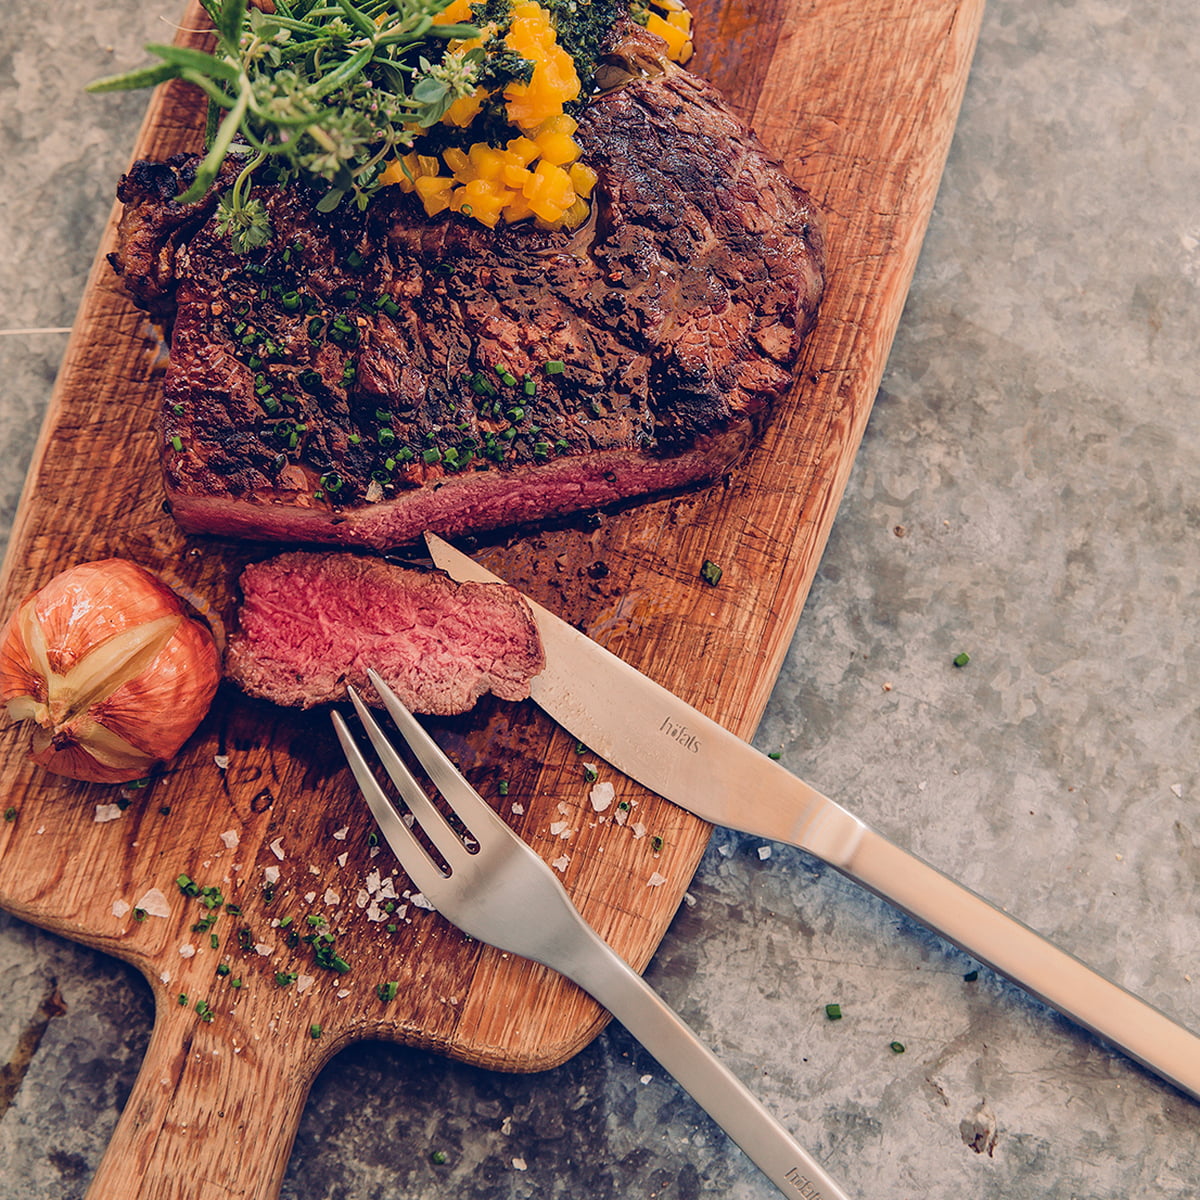 https://cdn.connox.com/m/100035/232321/media/Hoefats/Steakbesteck/hoefats-Steakbesteck-Edelstahl-Messer-und-Gabel-mit-fleisch-Ambiente.jpg